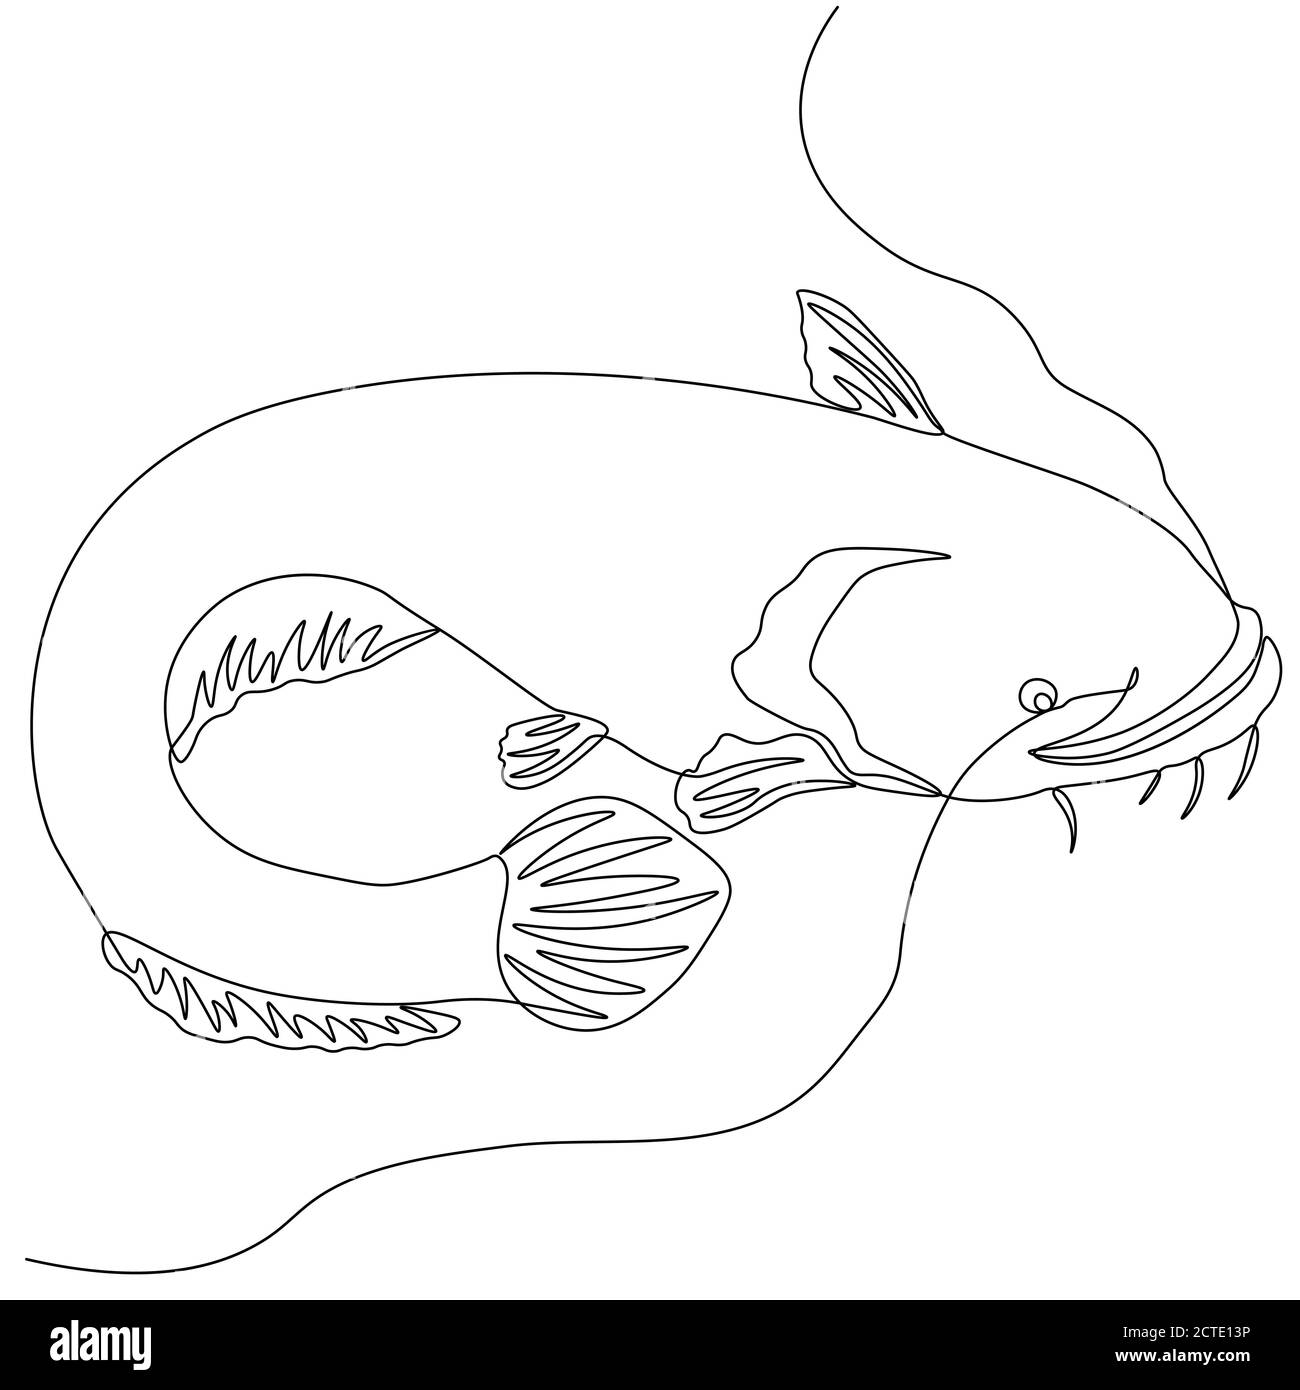 Wels. Eine Linie Fisch-Design Silhouette. Logo-Design. Handgezeichnete Vektorgrafik im Minimalismus-Stil... Stock Vektor